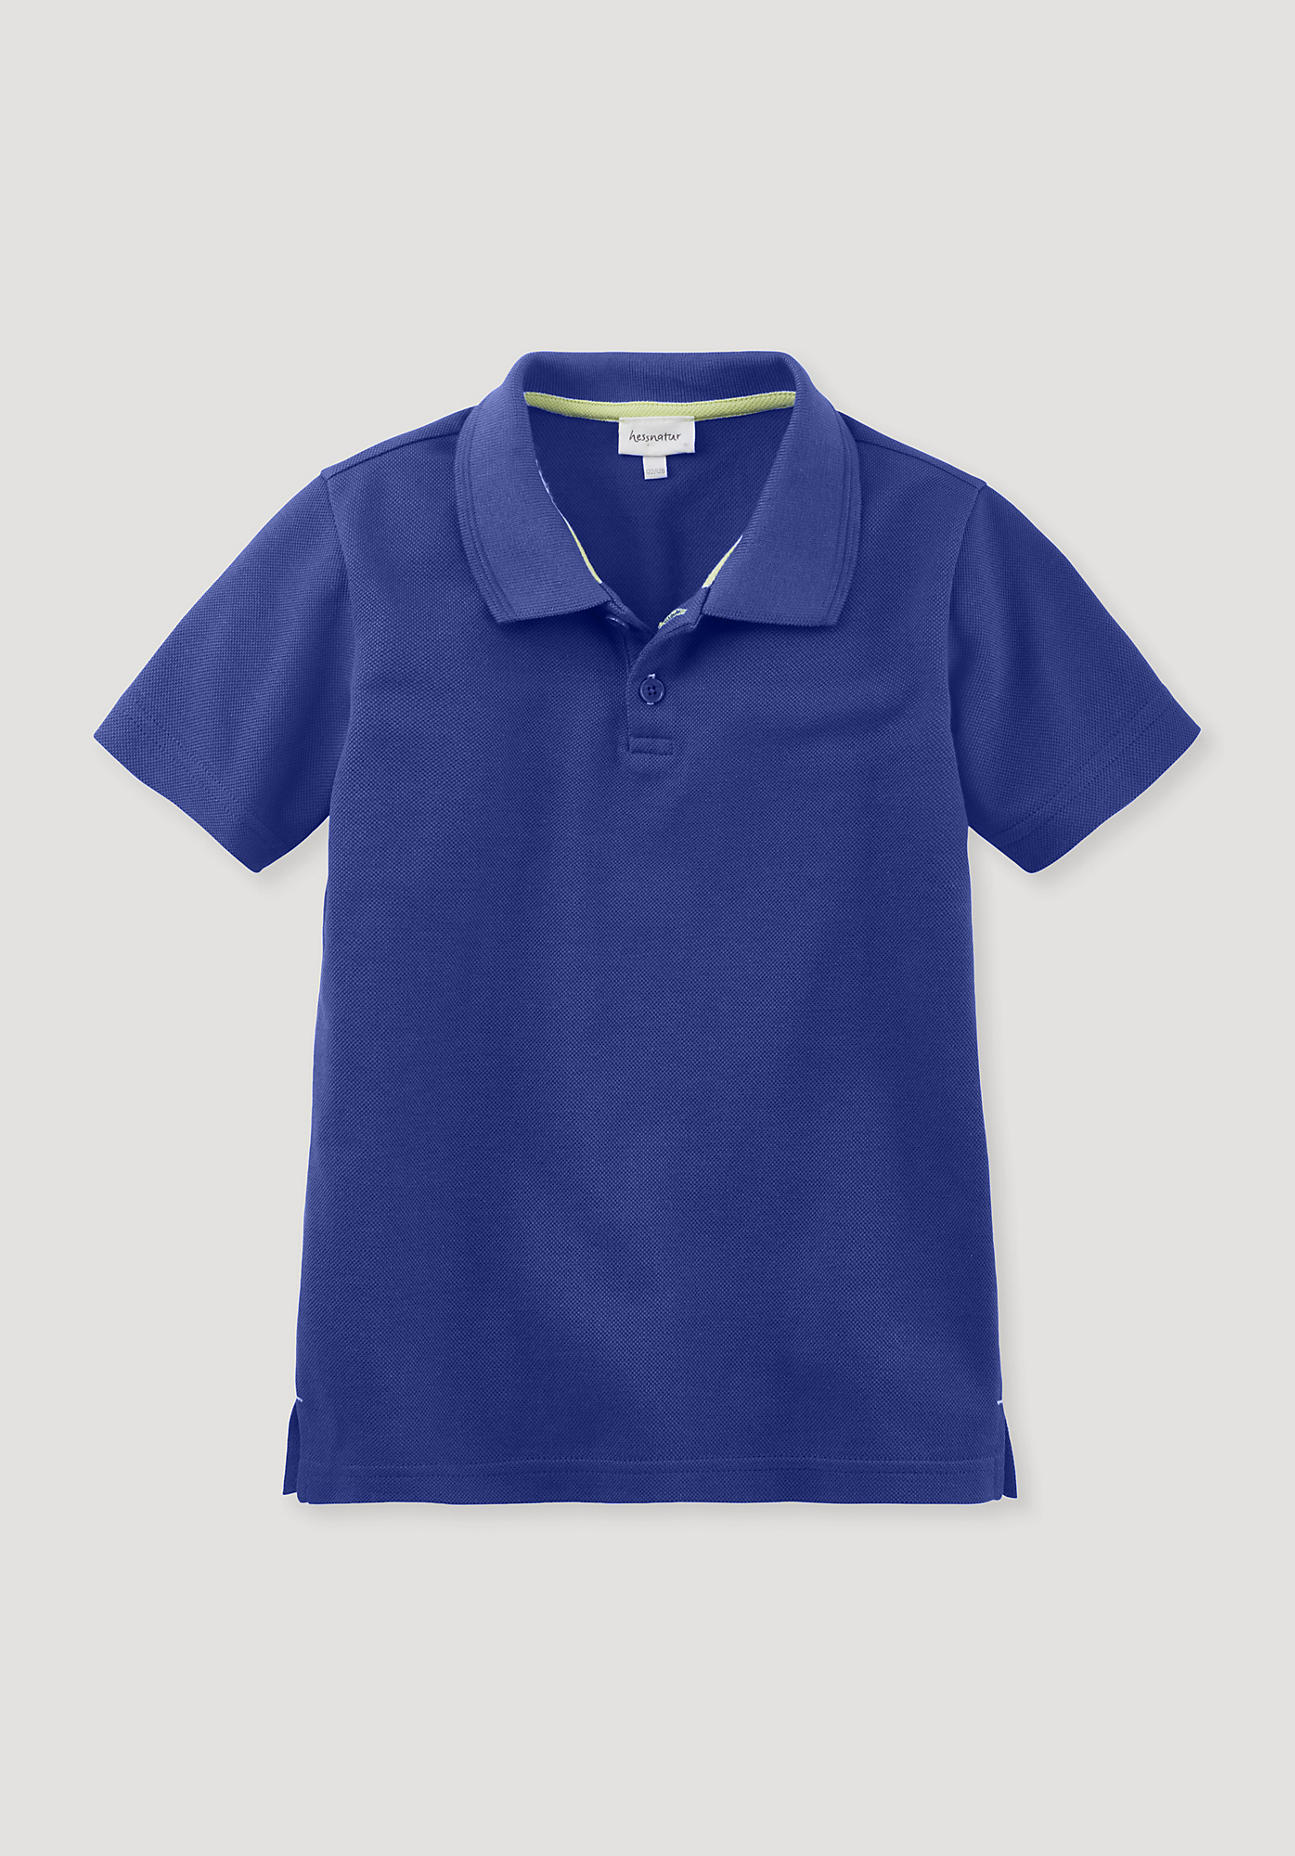 hessnatur Kinder Polo Regular aus Bio-Baumwolle - blau - Größe 110/116